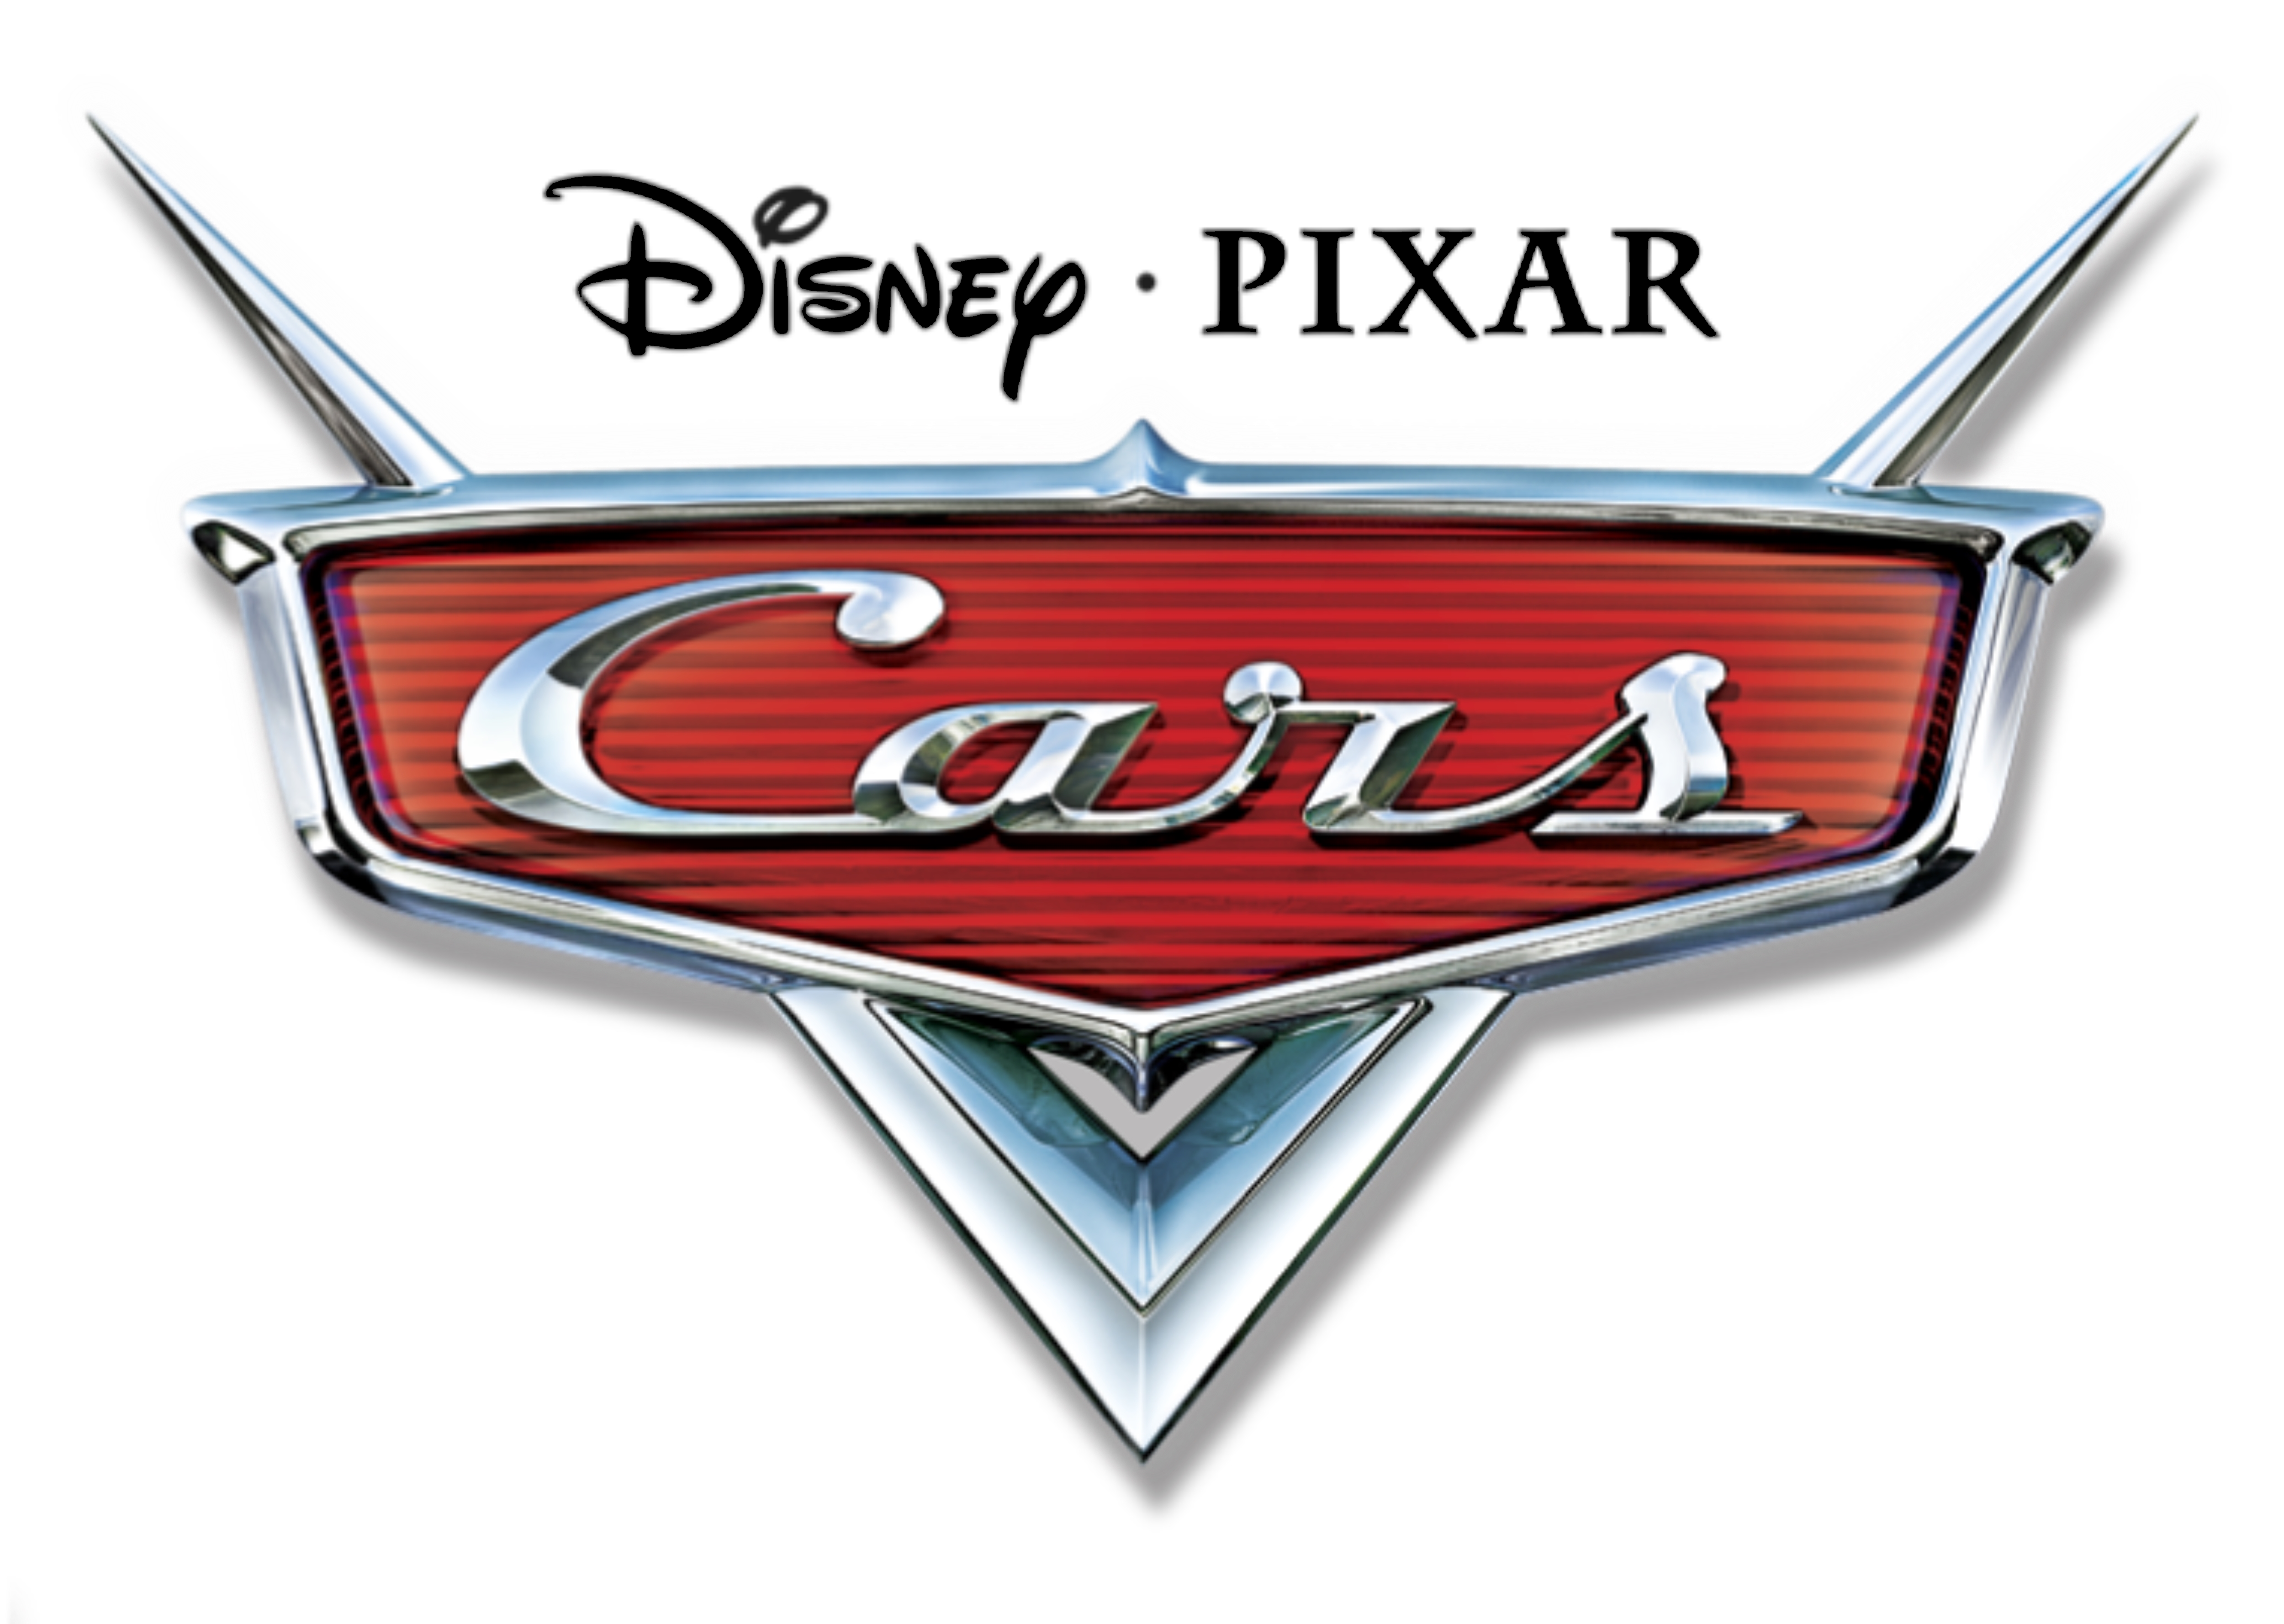 Disney Pixar Cars Logos - IMAGESEE